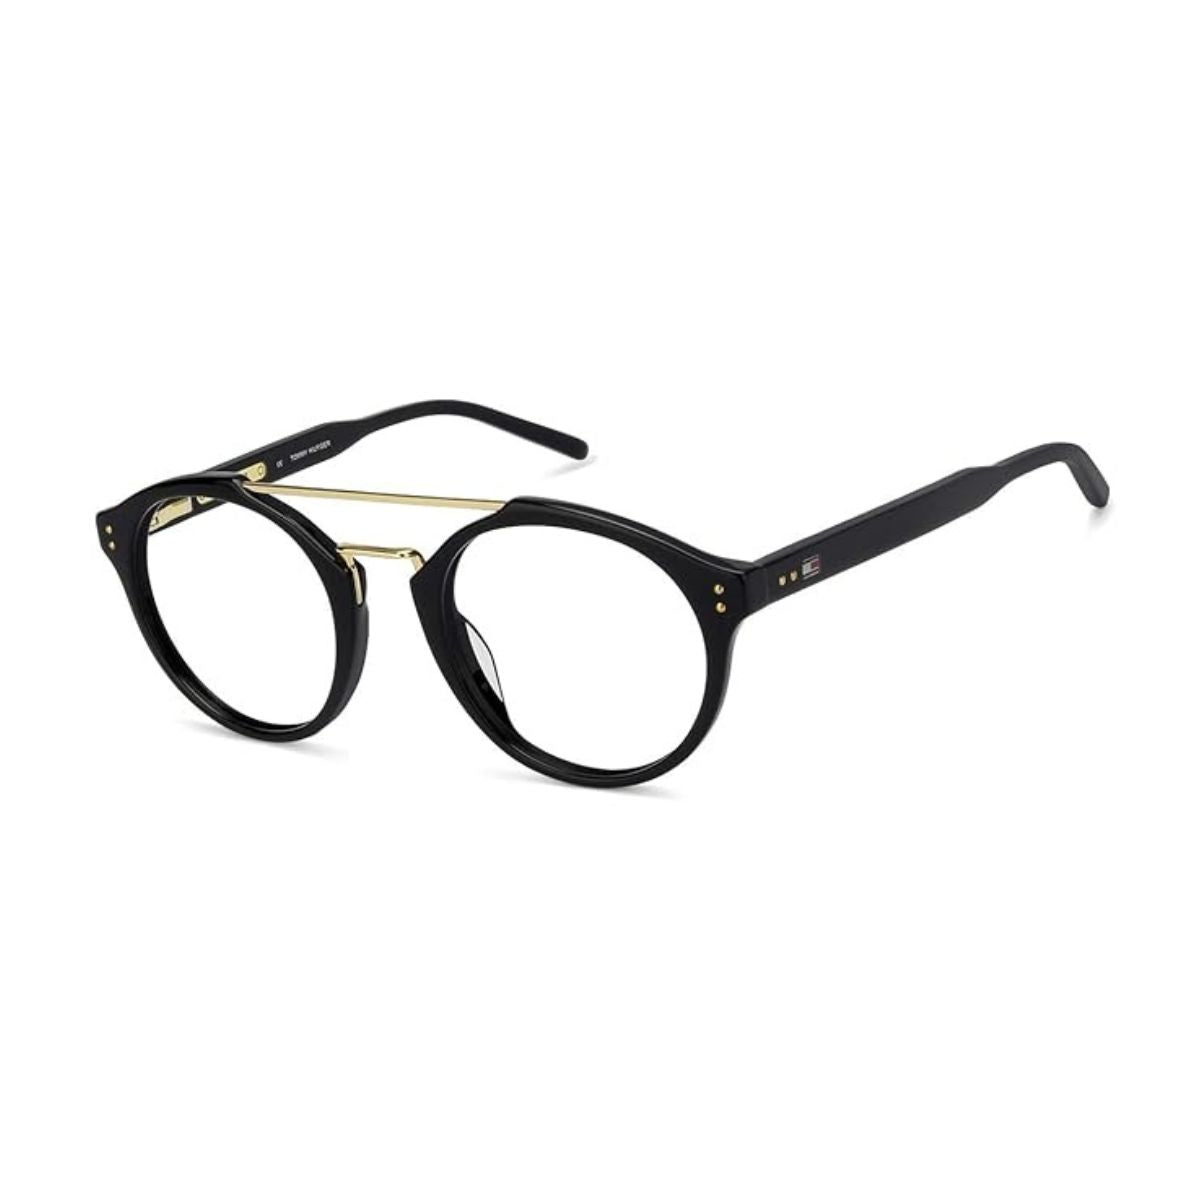 "Tommy Hilfiger 6128 C2 prescription glasses frame for women's online at optorium"